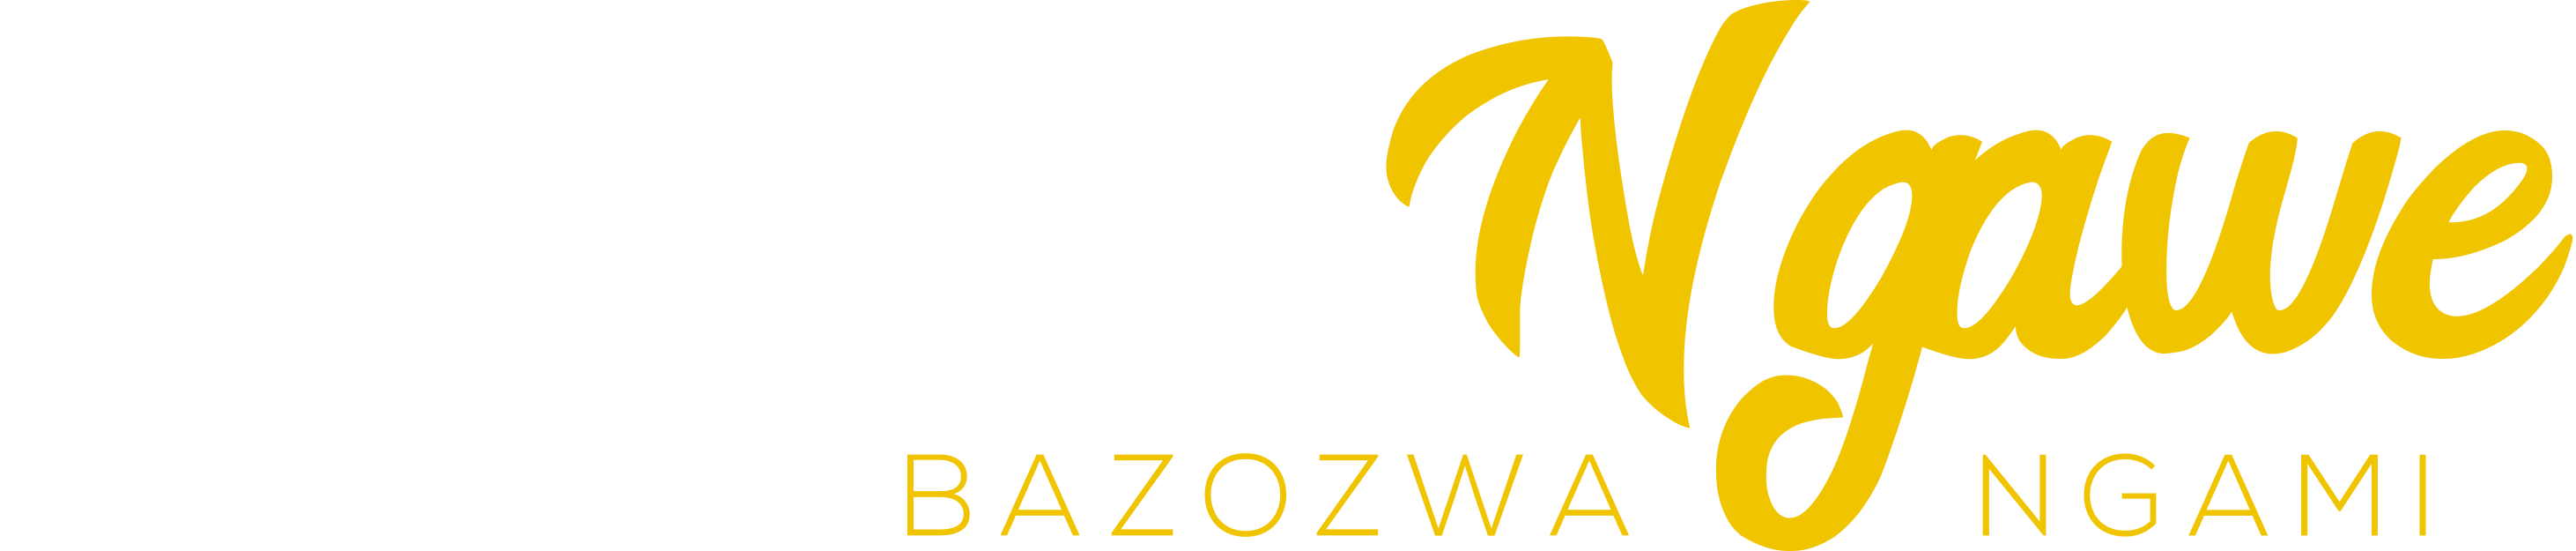 Ngizwe Ngawe Affiliate Marketing